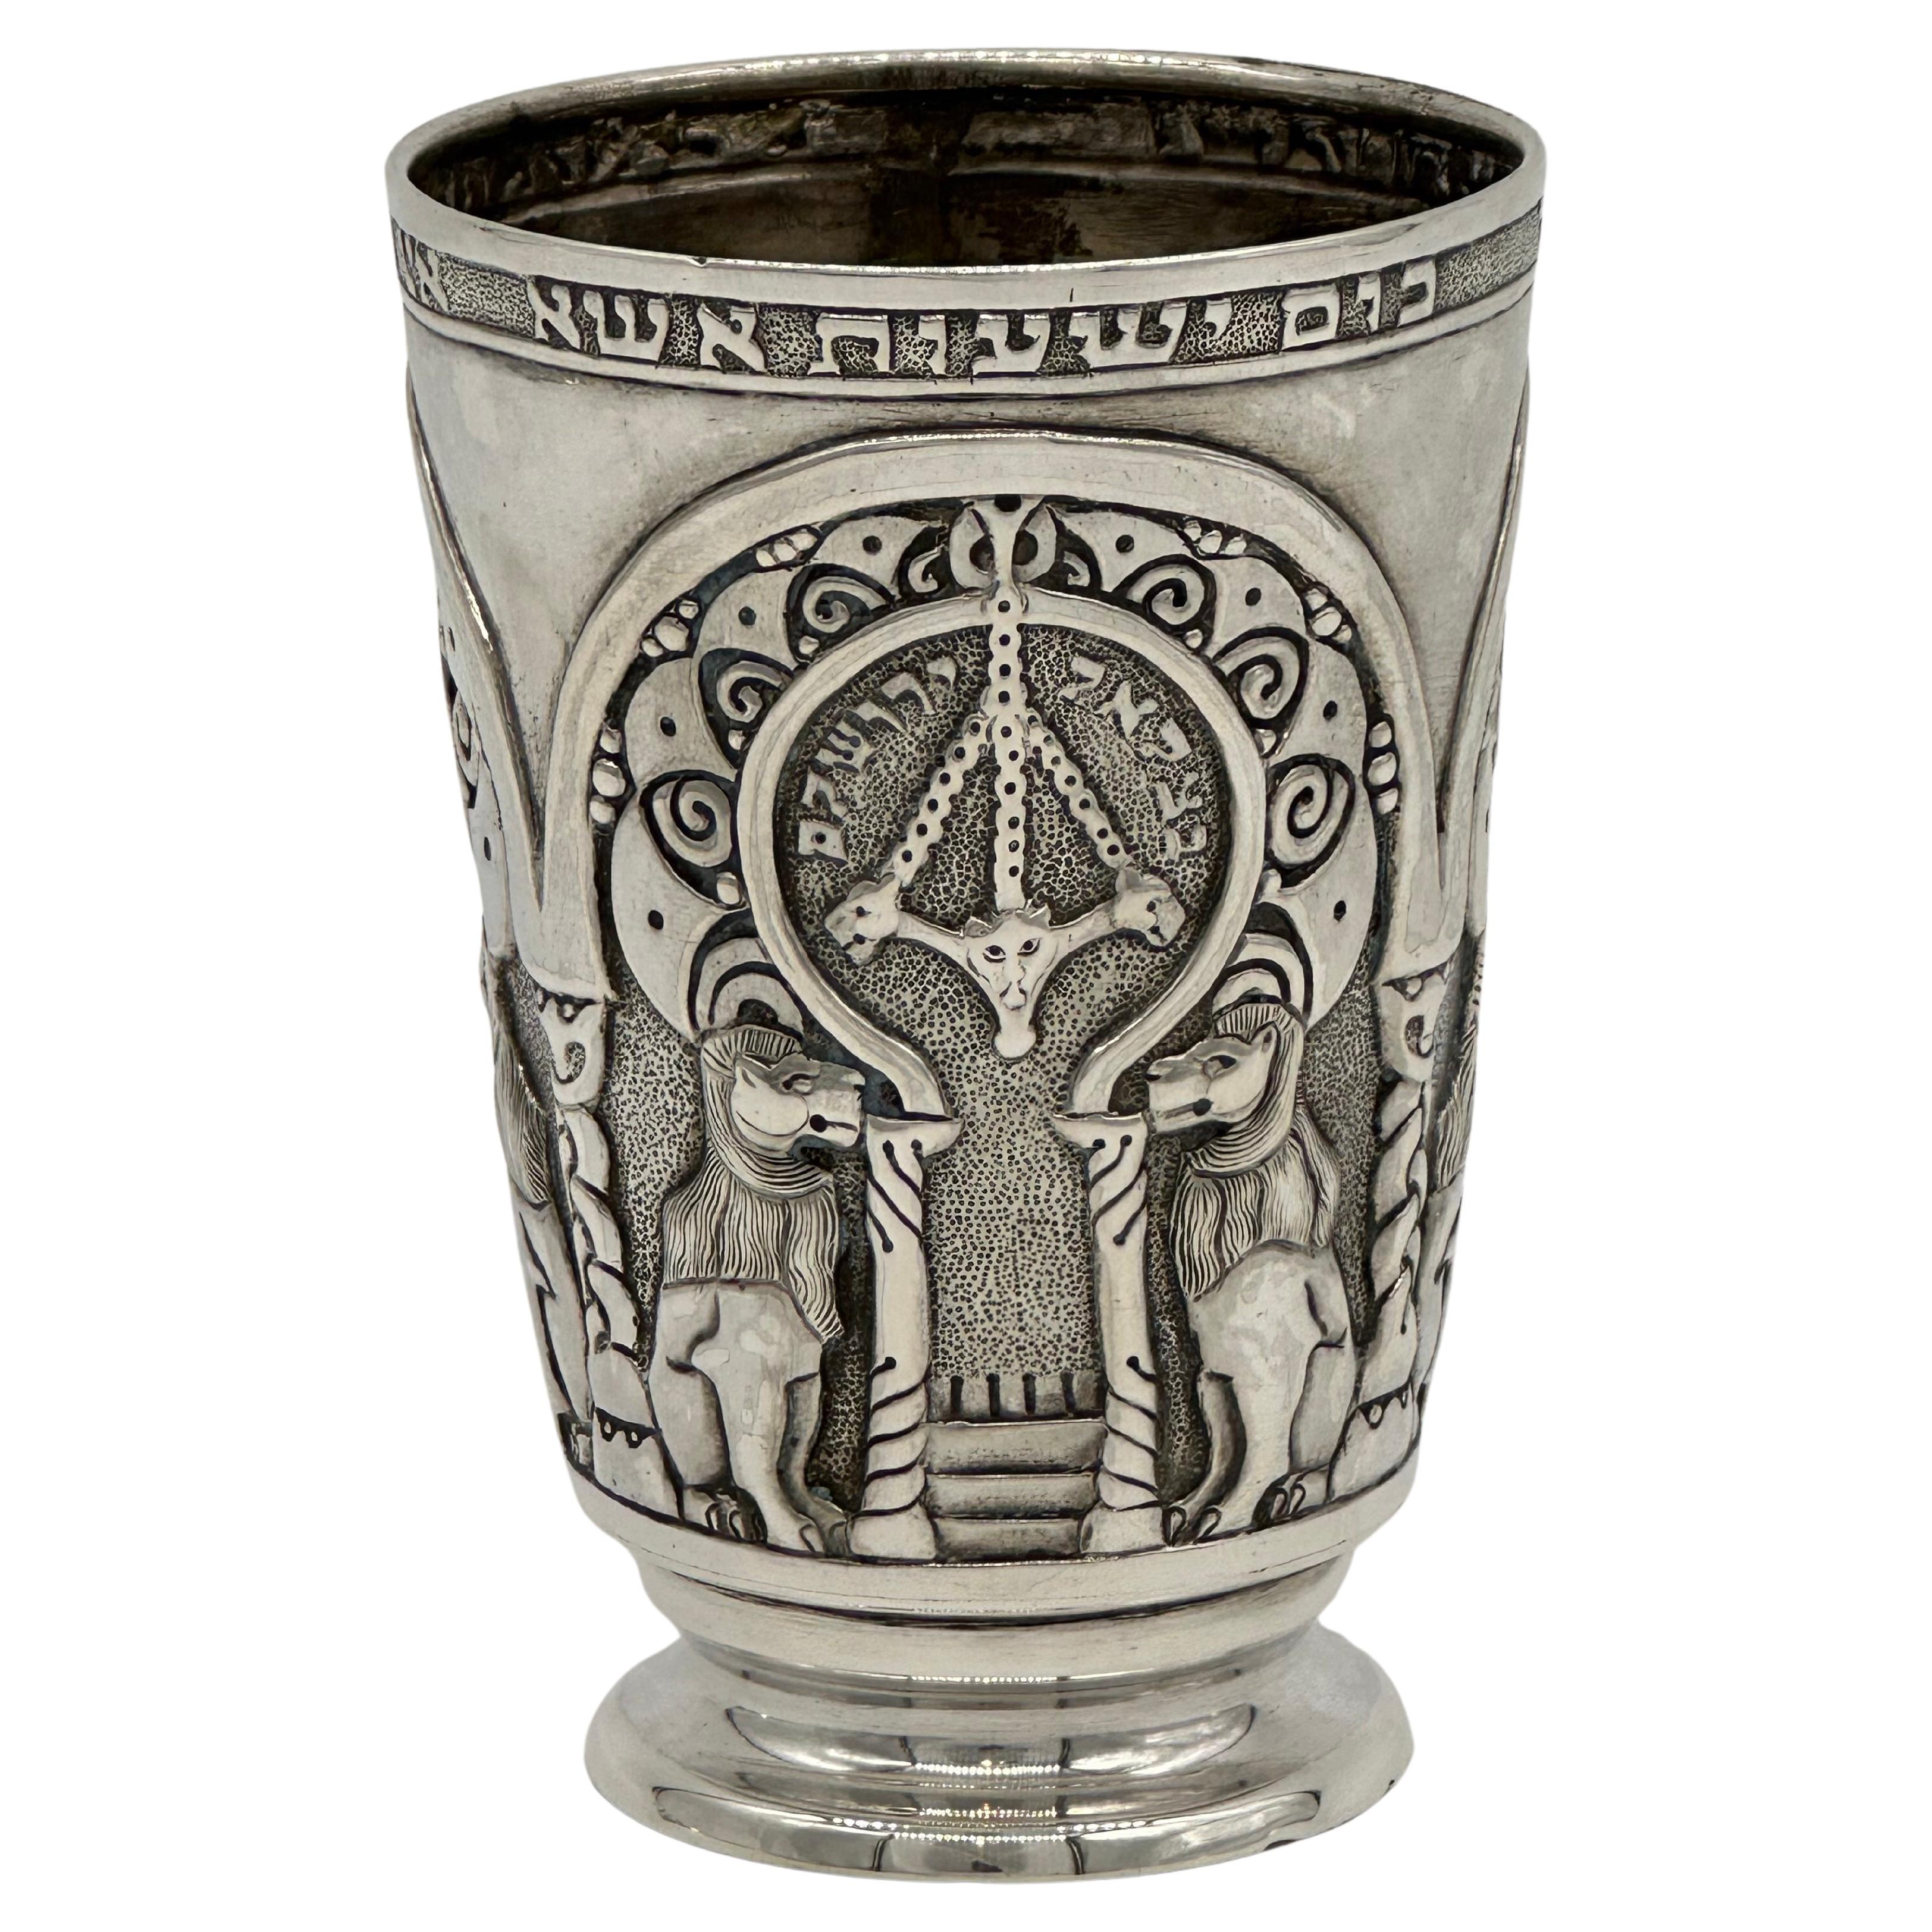 Important Early 20th Century Silver Kiddush cup by Bezalel School Jerusalem